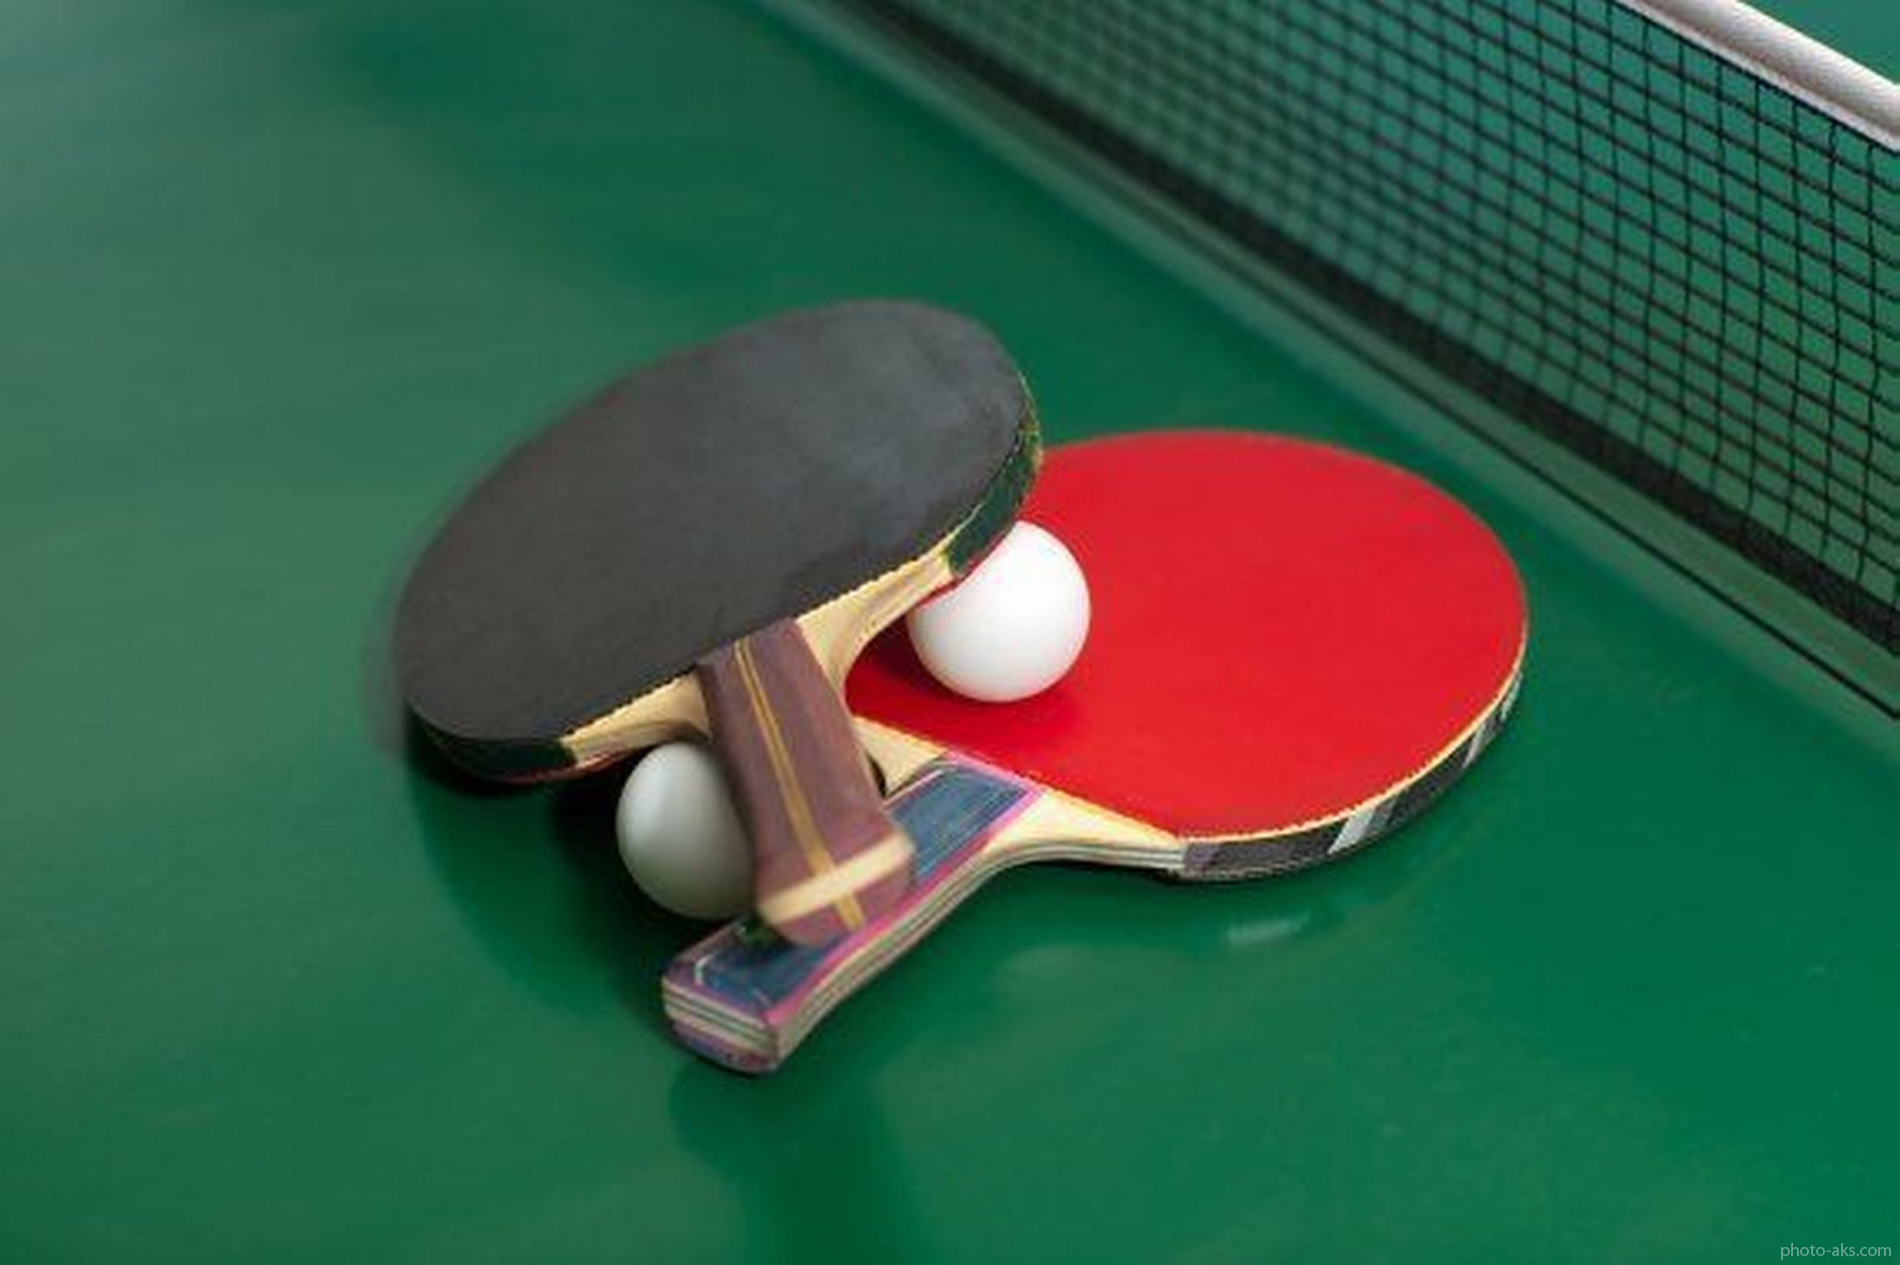 تساوی های بی پایان تاید واتر و پتروشیمی در فینال لیگ برتر تنیس روی میز